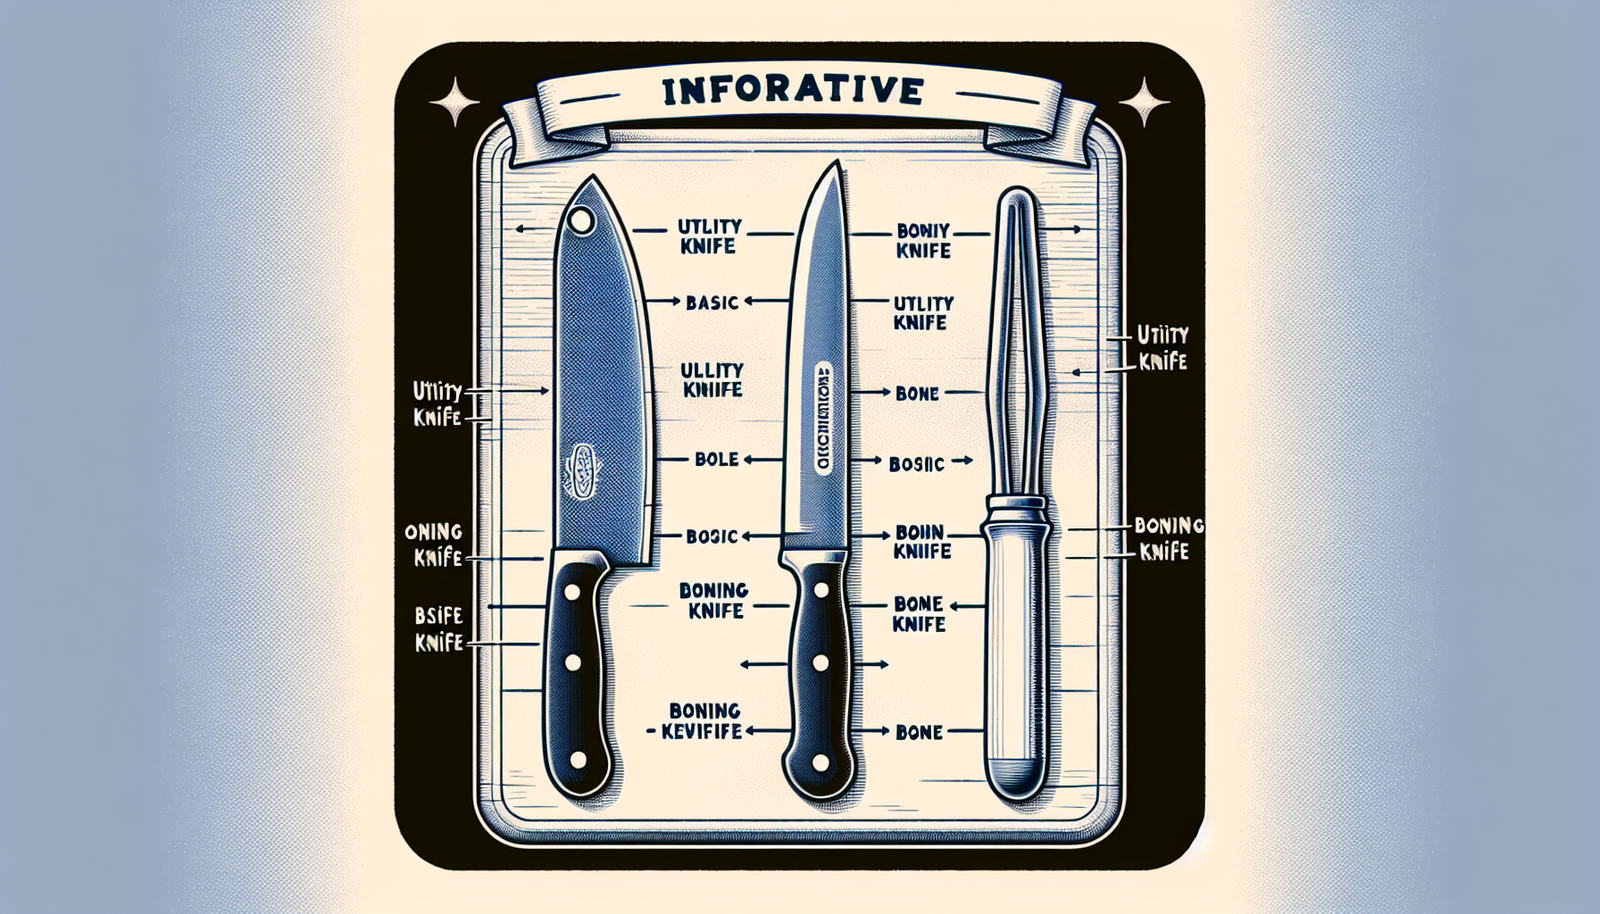 Can I Use A Utility Knife As Boning Knife?